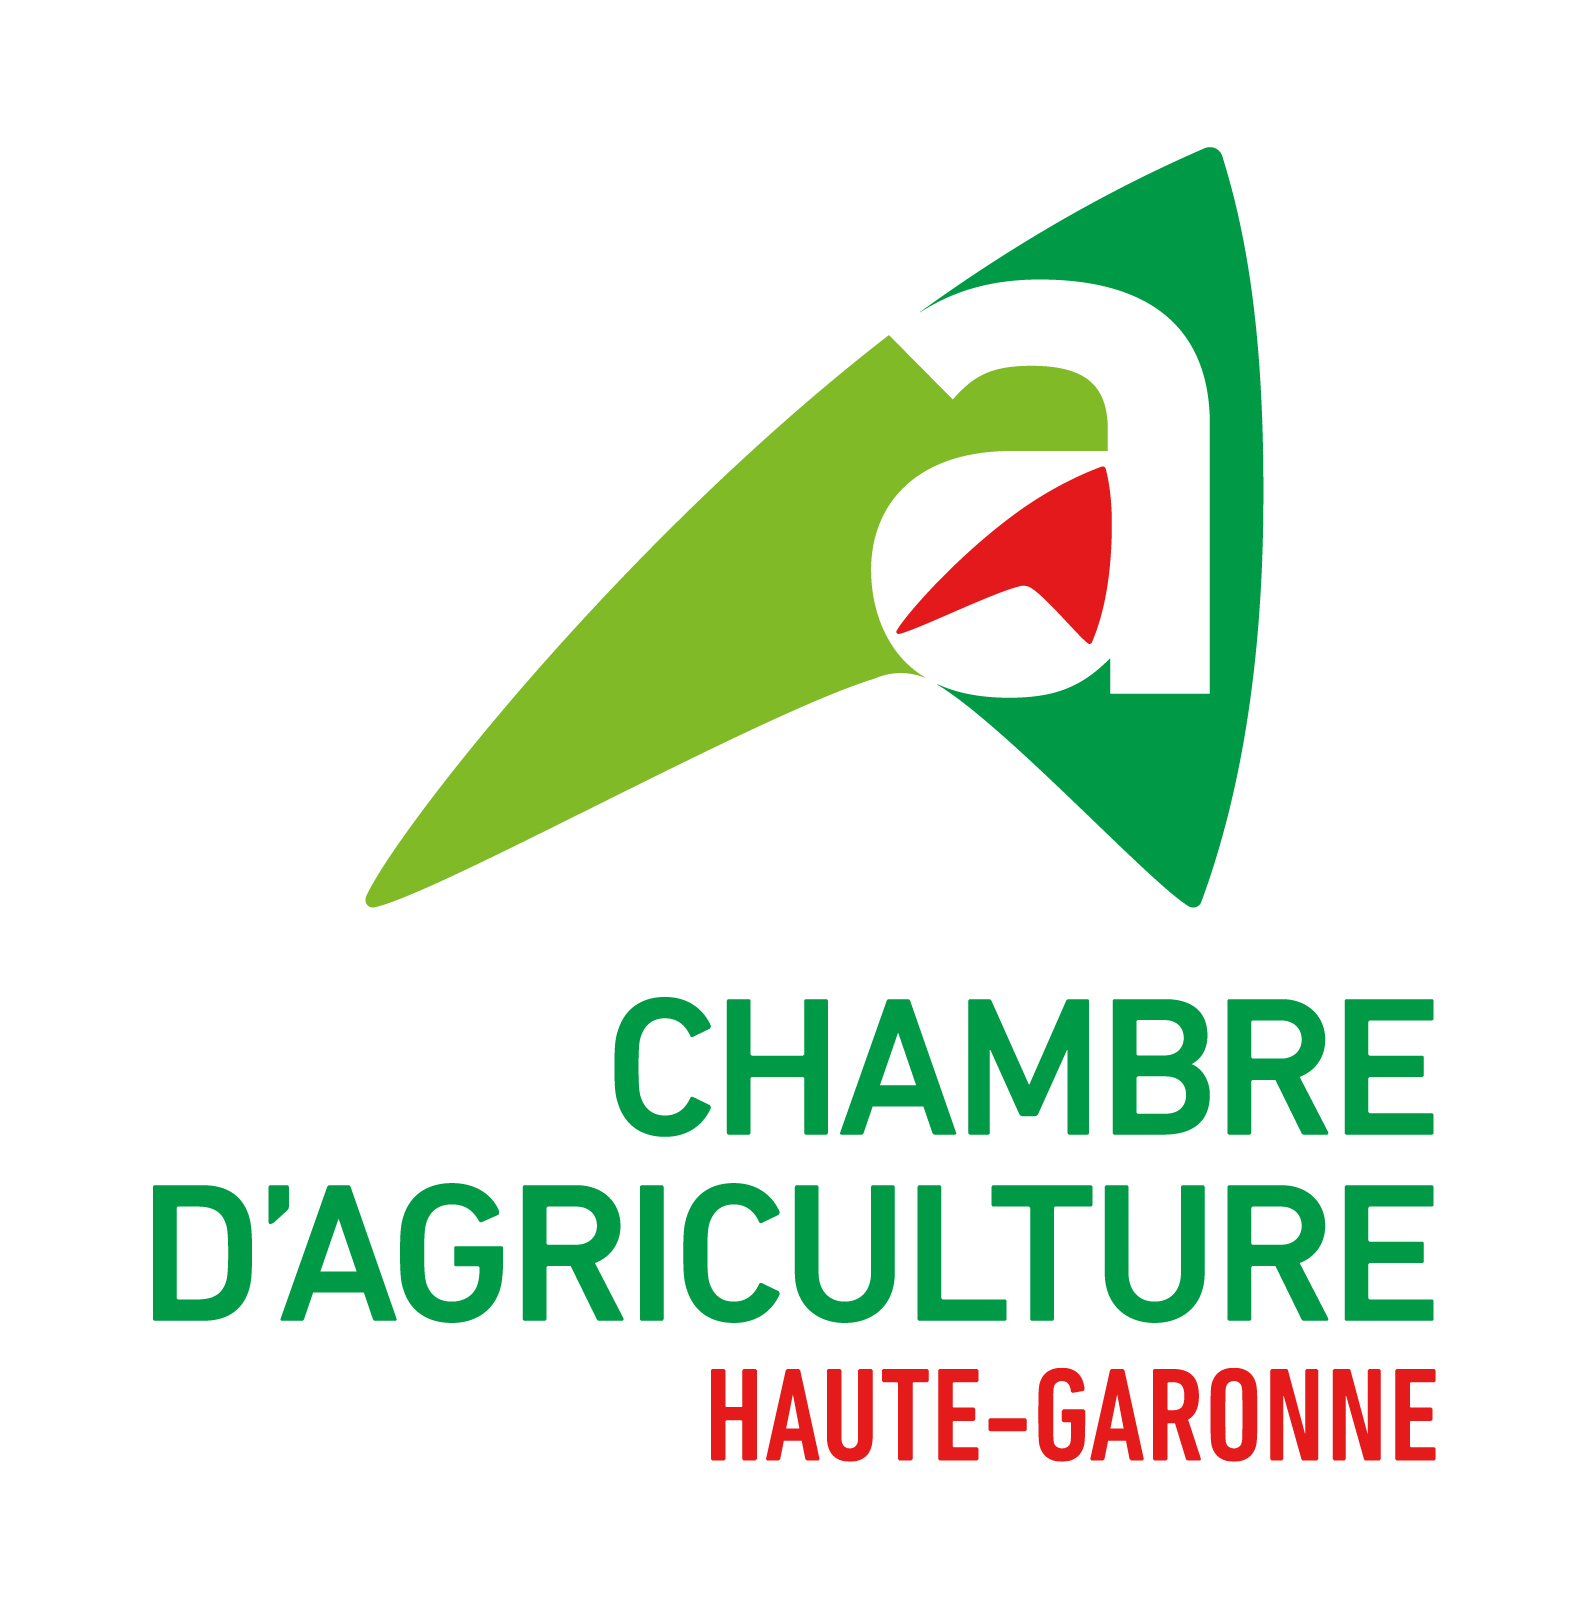 Chambre d'agriculture de Haute-Garonne, retour à la page d'accueil